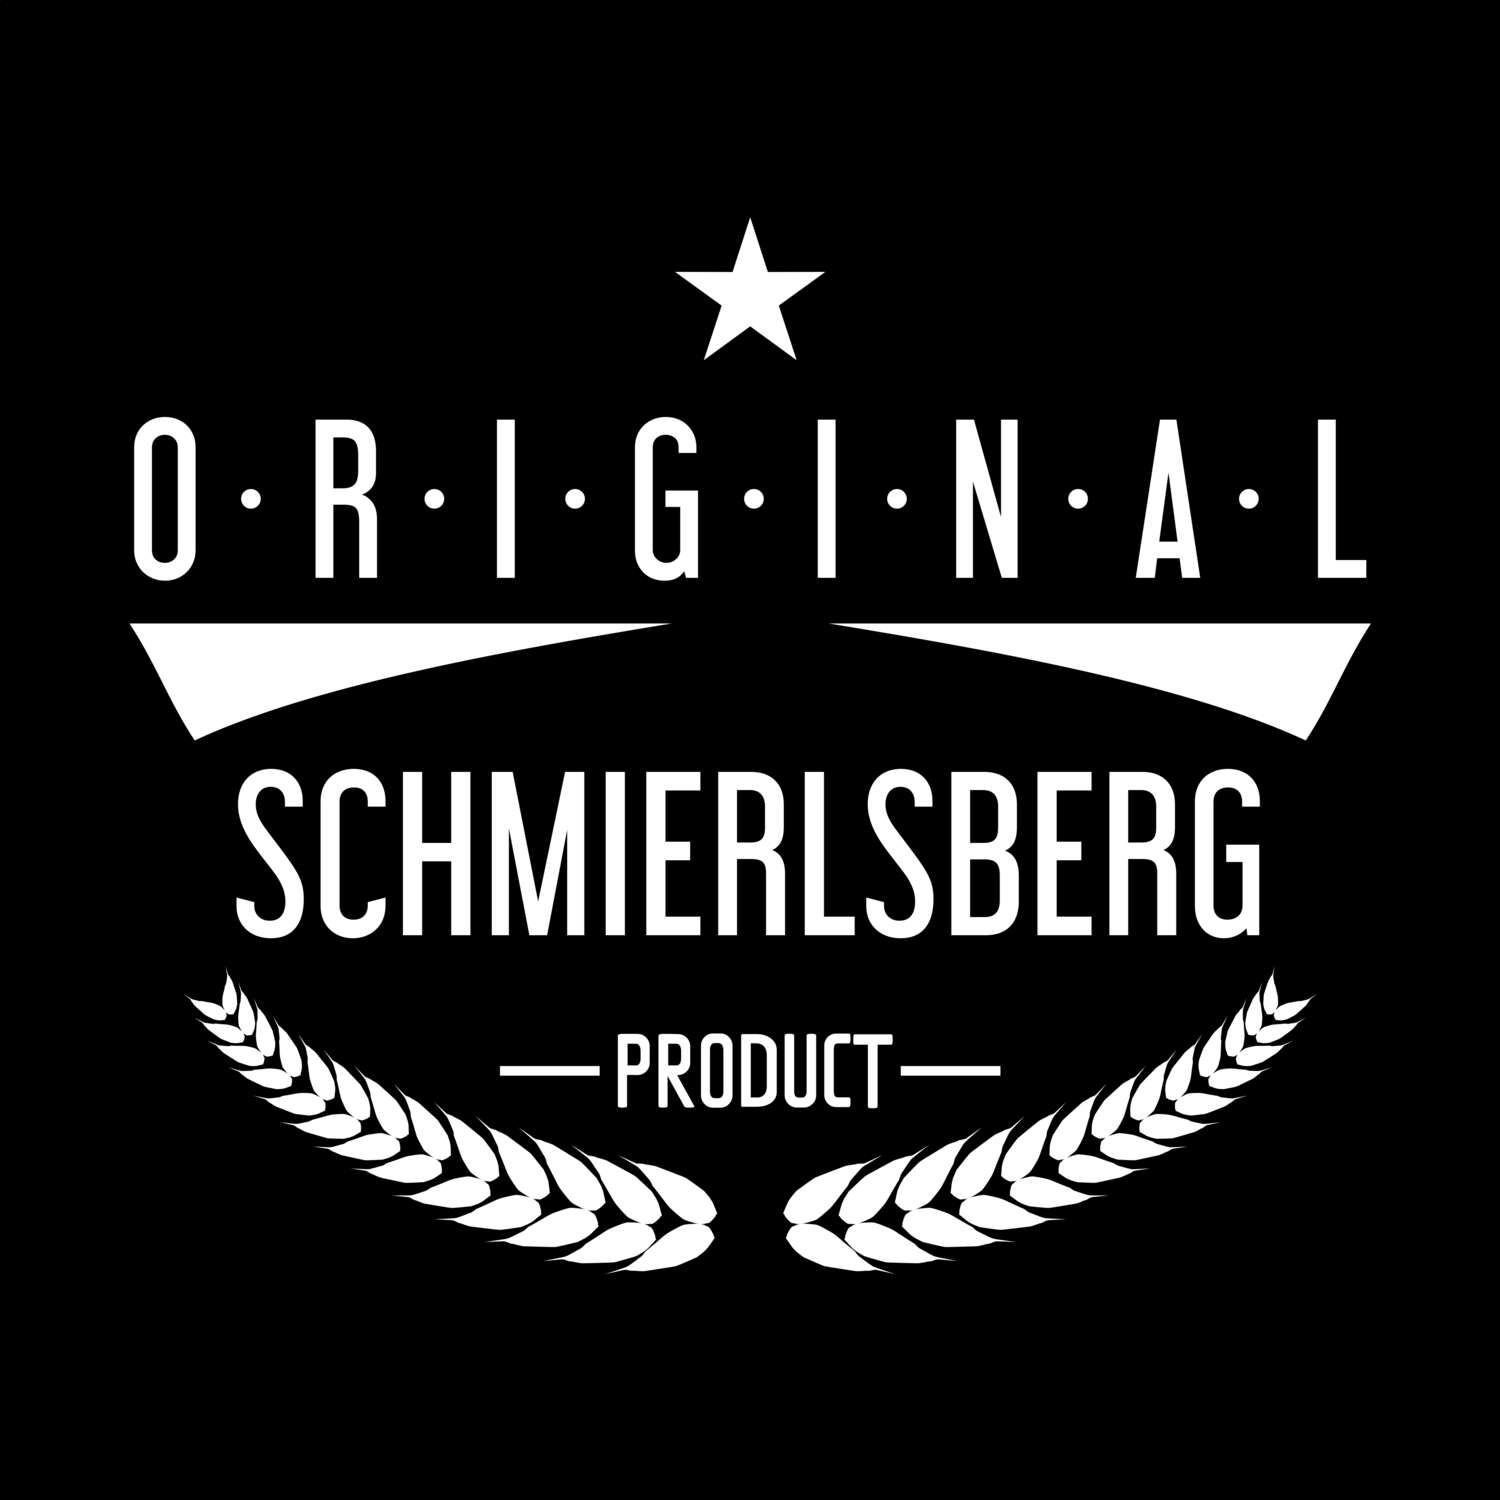 Schmierlsberg T-Shirt »Original Product«